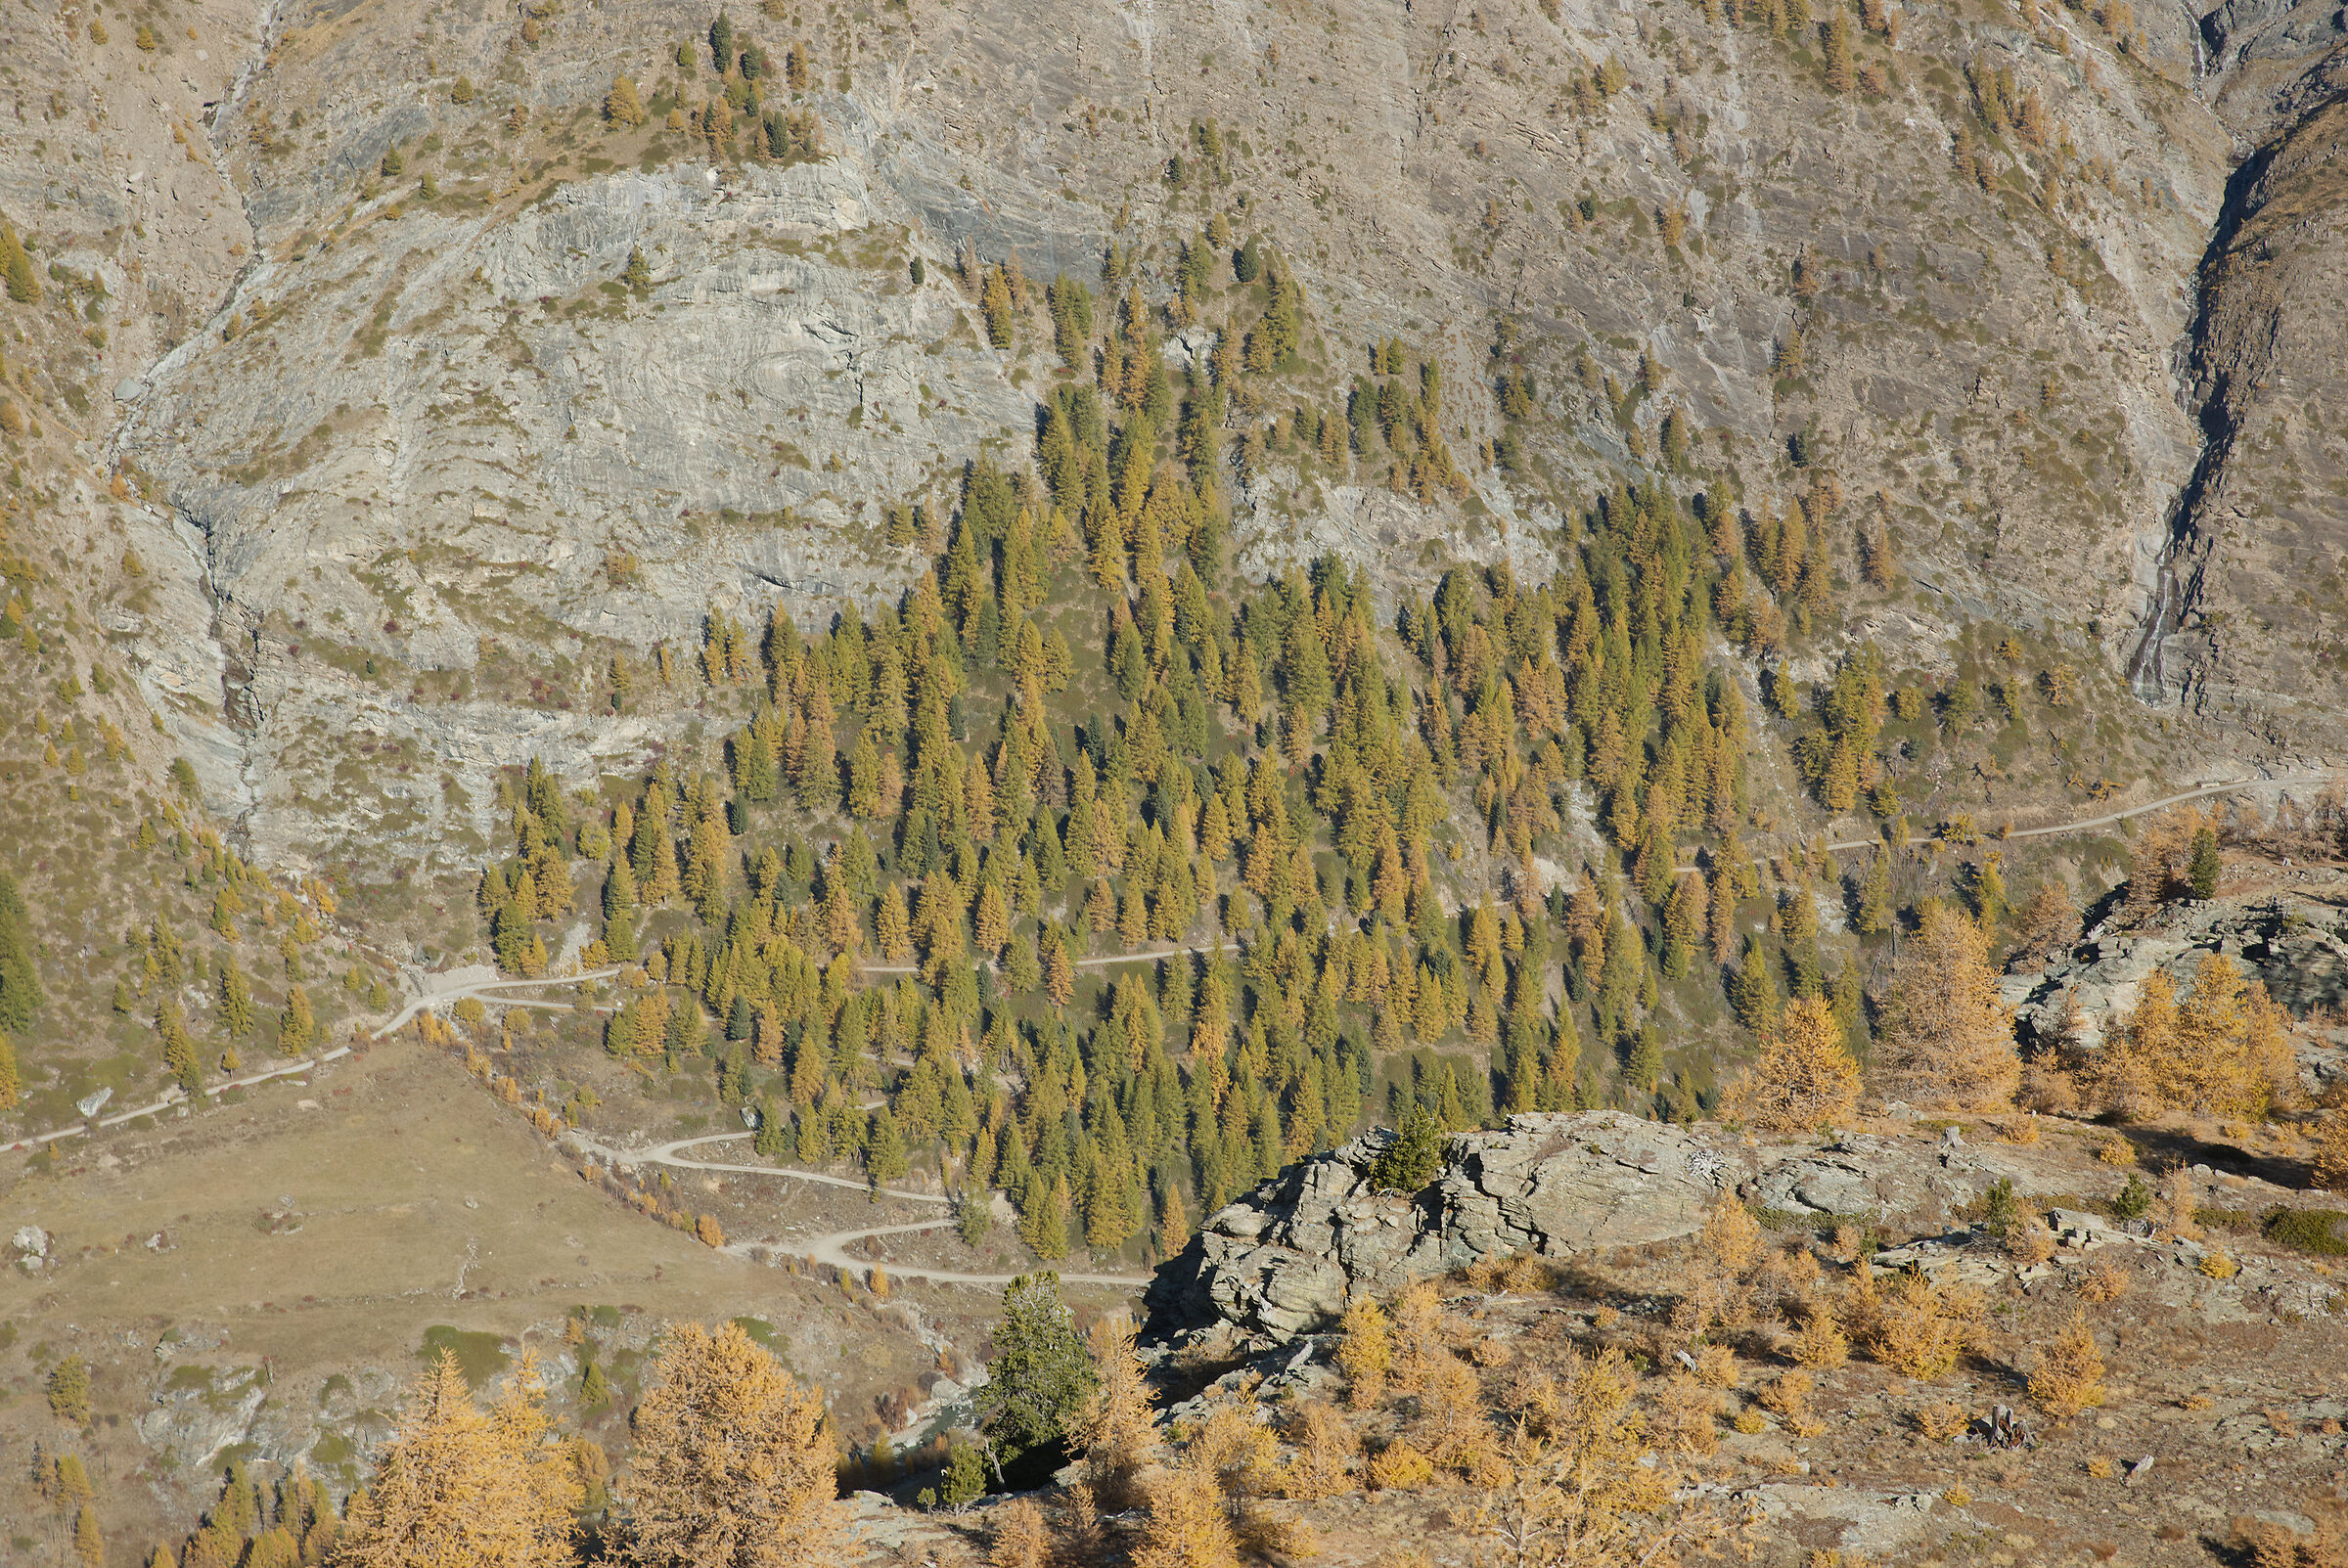 autunno in Val d'Aosta ottobre 2021...